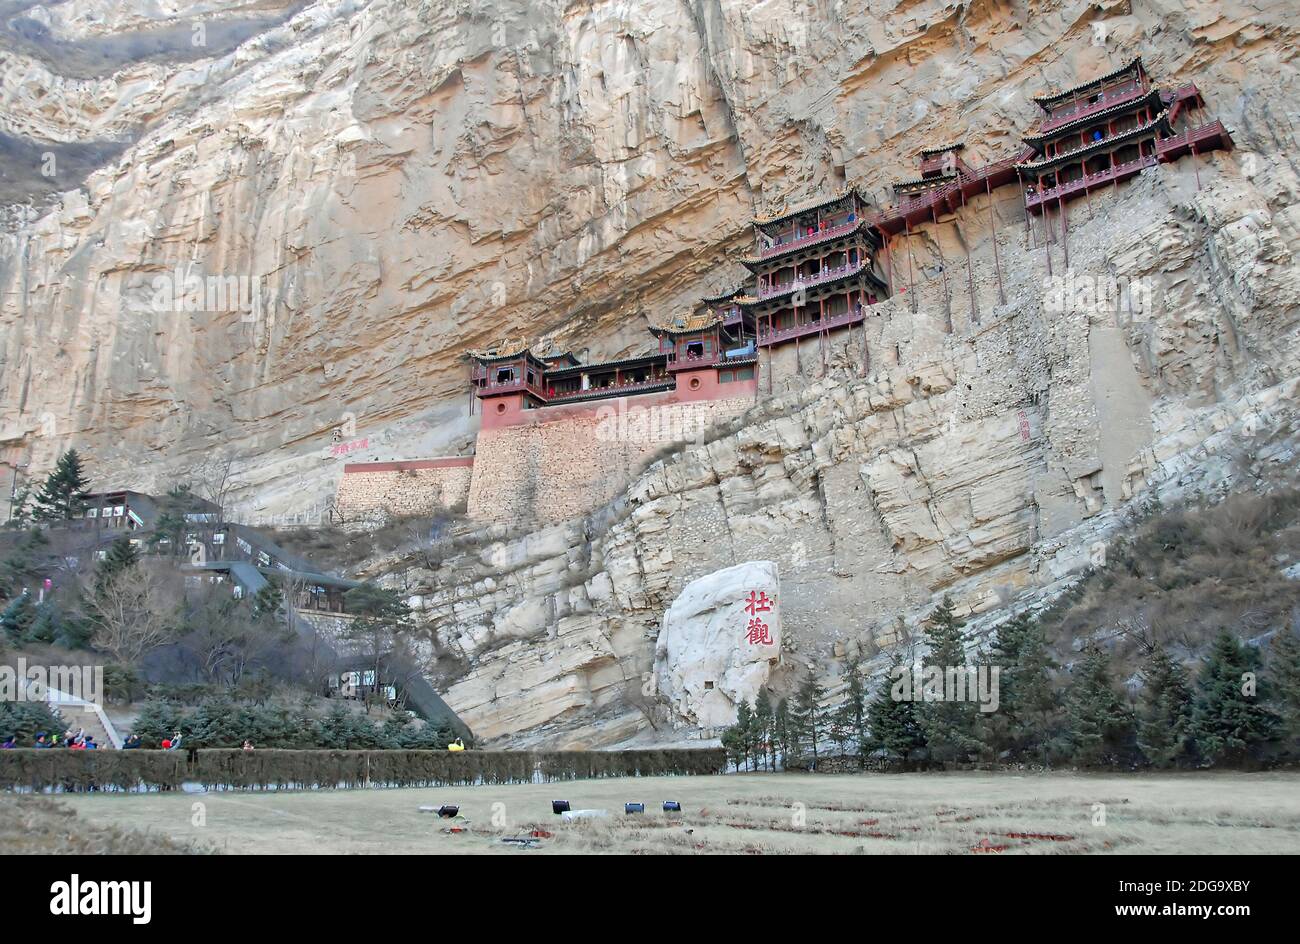 Le Temple suspendu ou Monastère suspendu près de Datong dans la province du Shanxi, en Chine. Les caractères chinois signifient « pectaculaire » Banque D'Images